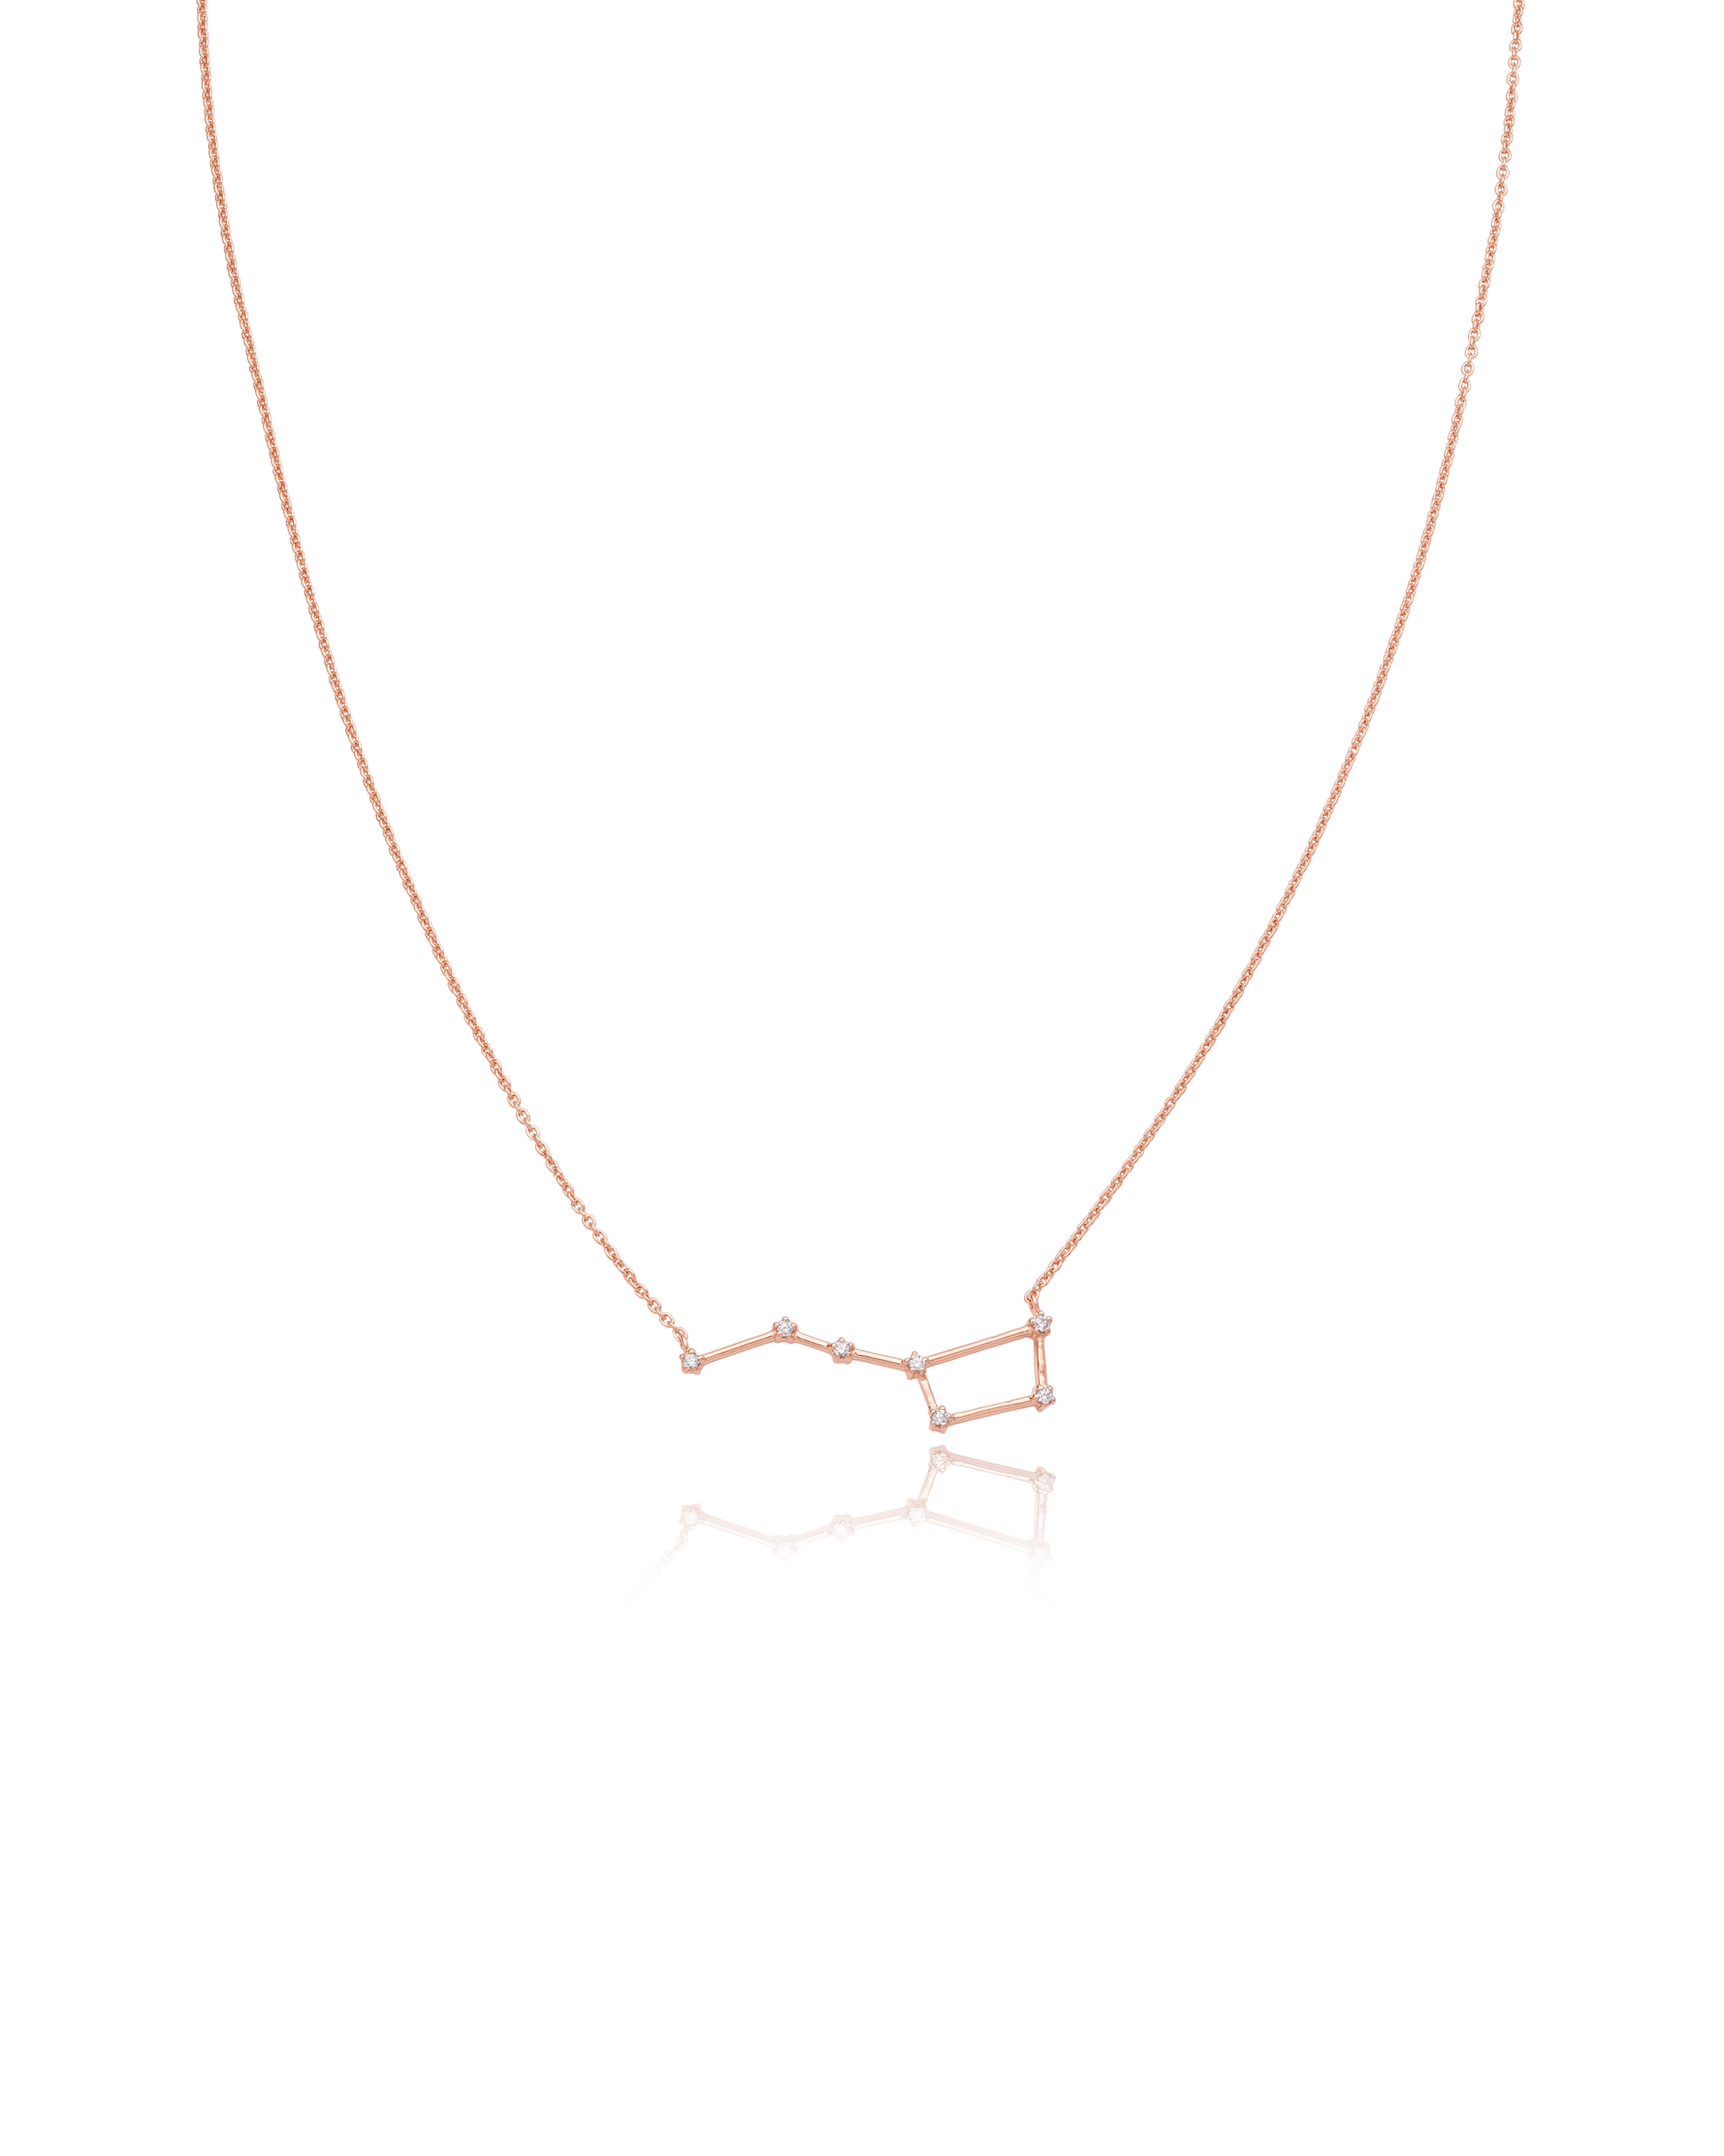 Ursa Major Constellation Necklace - 18K Rose Vermeil Necklaces magal-dev Big Dipper 16" 